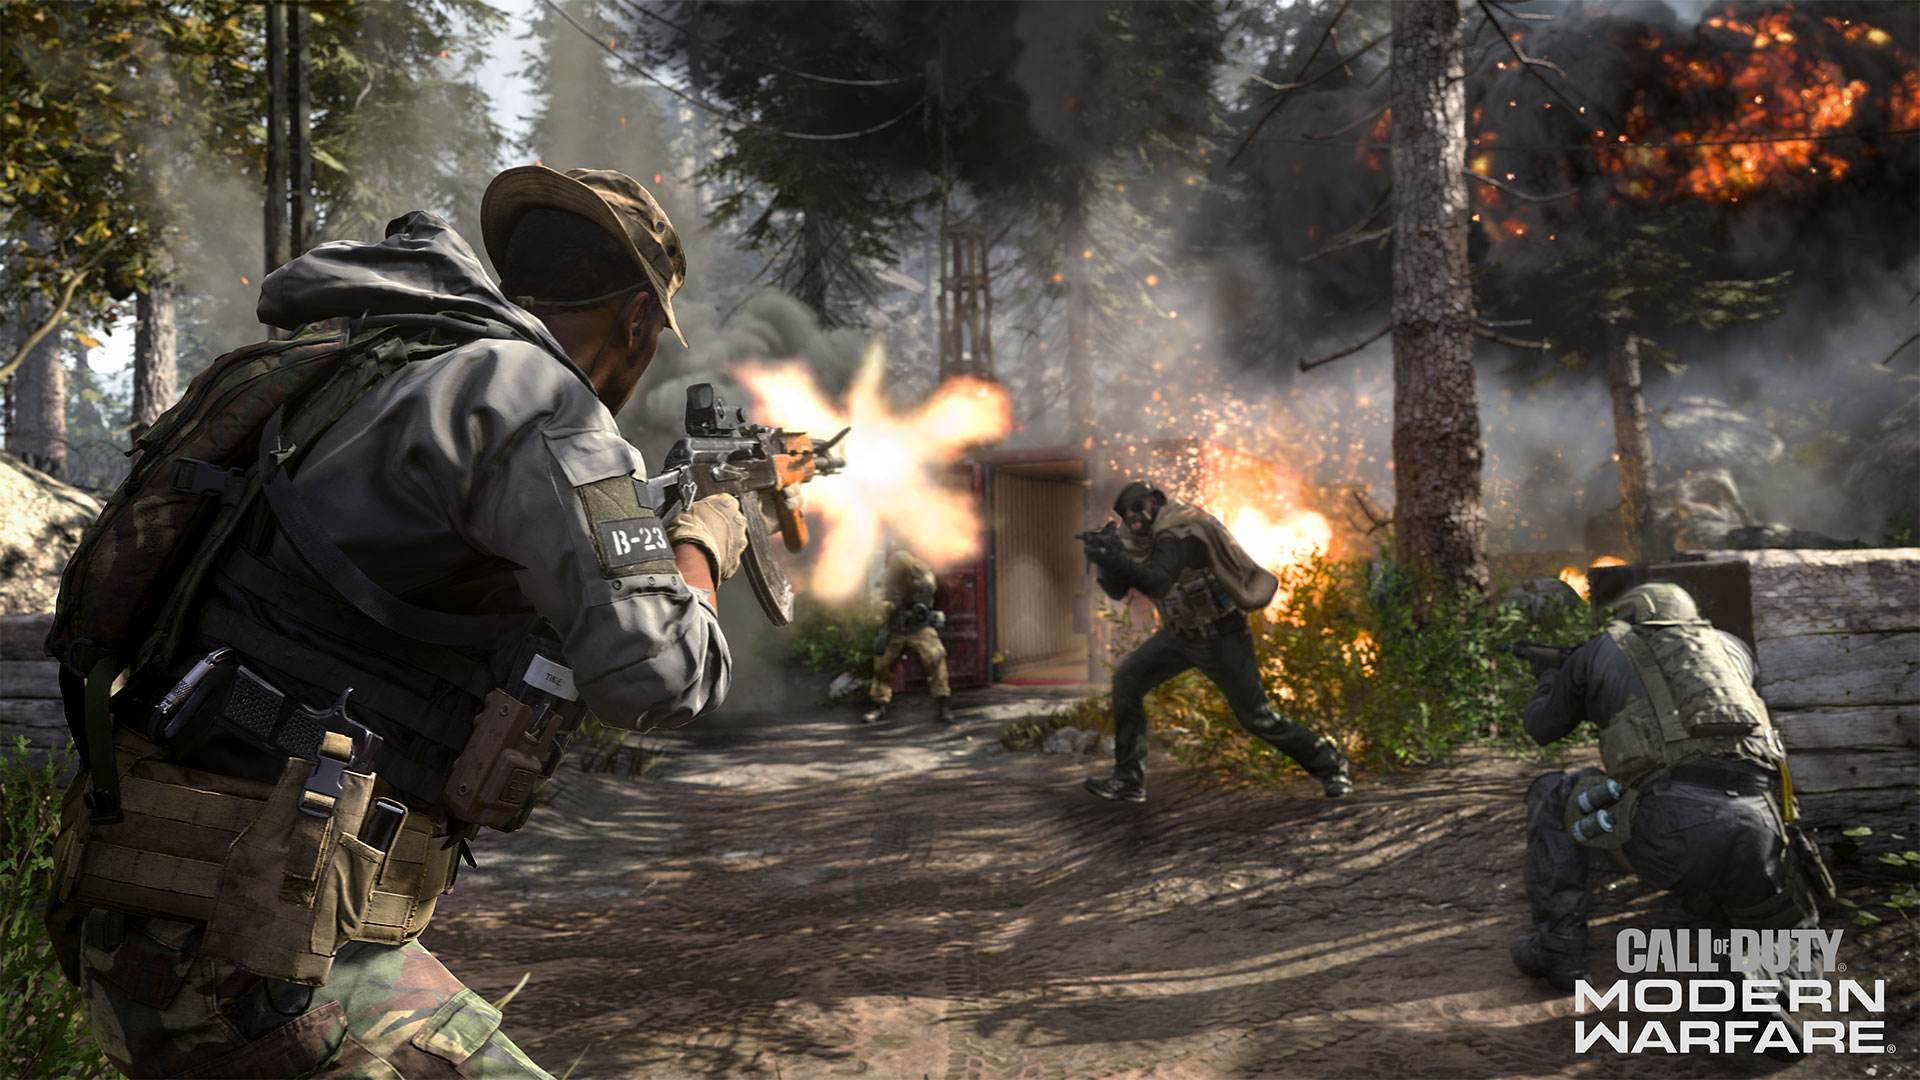 Begitulah panik multiplayer dari 'Call of Duty: Modern Warfare' 1